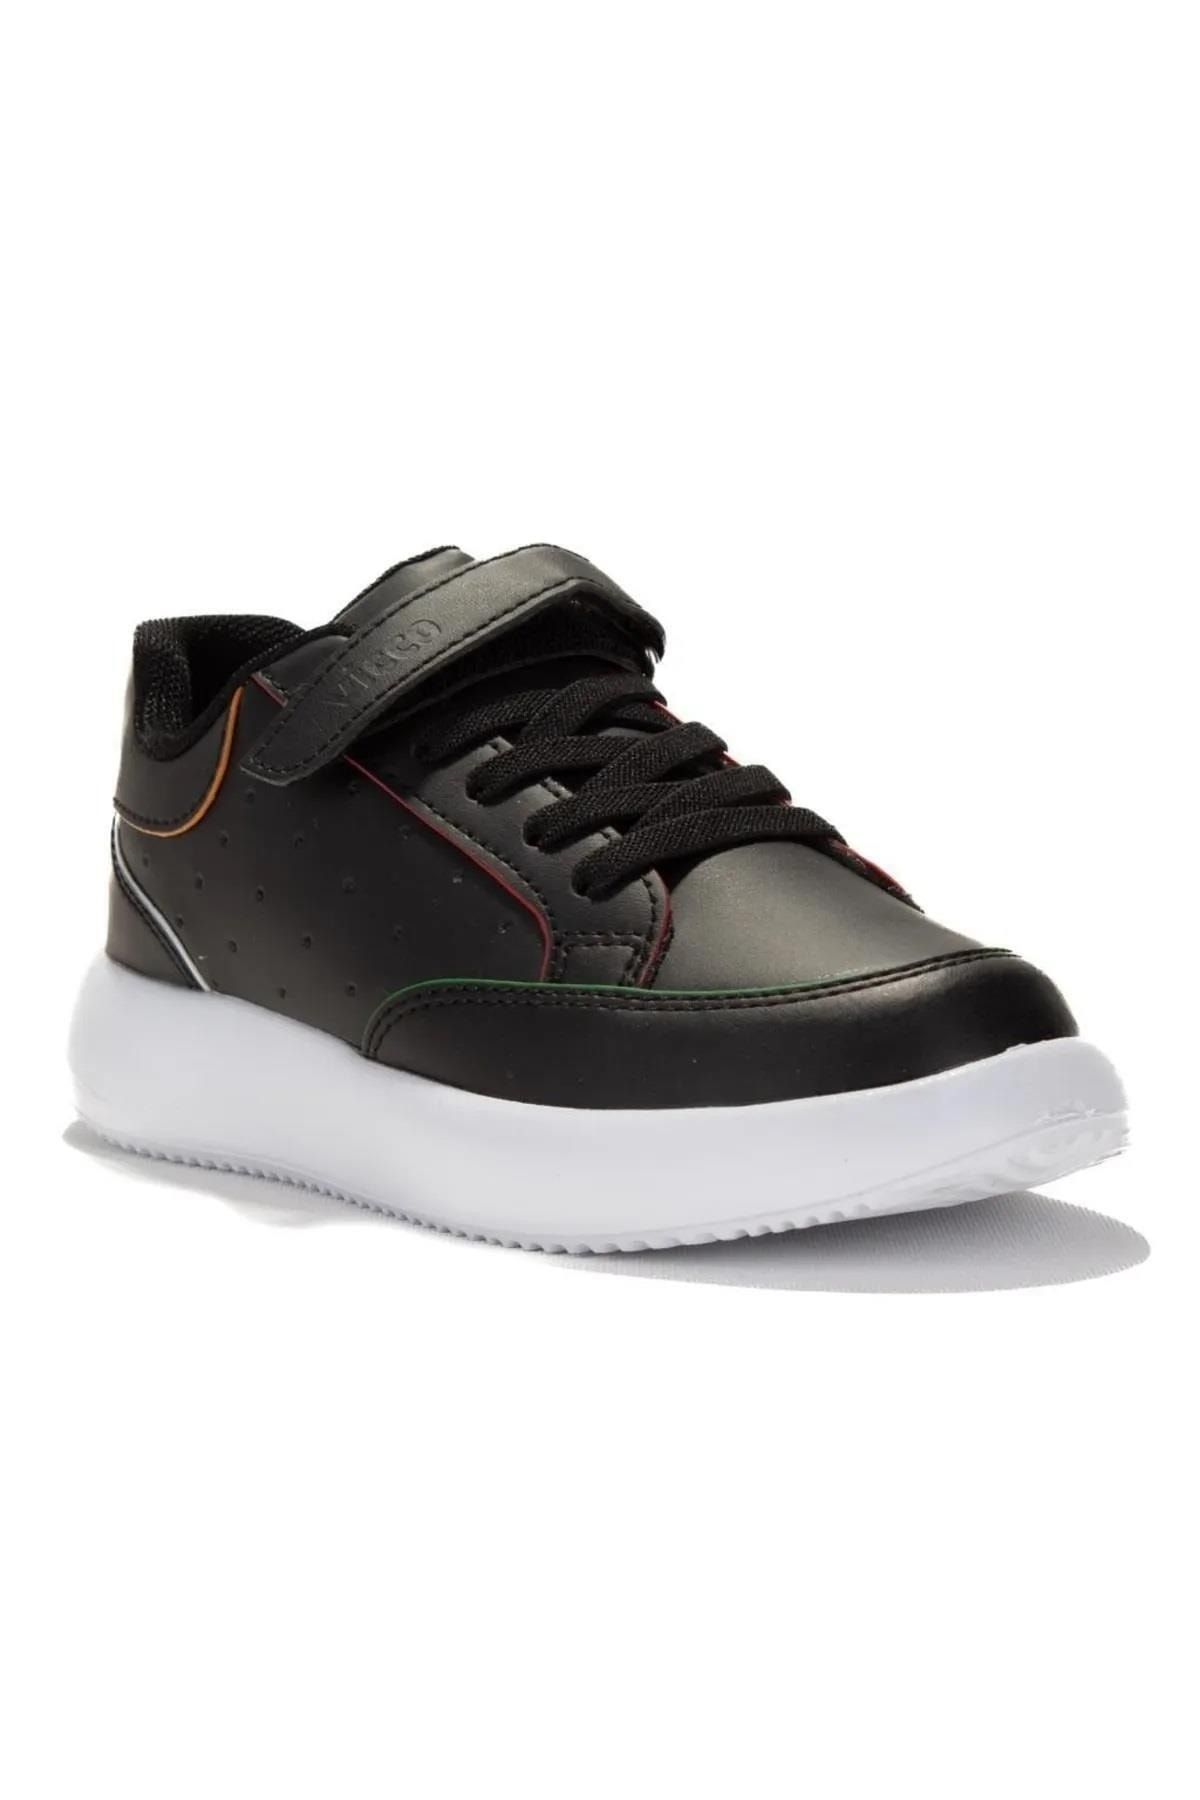 Vicco Latte Siyah Çocuk Sneaker Ayakkabı